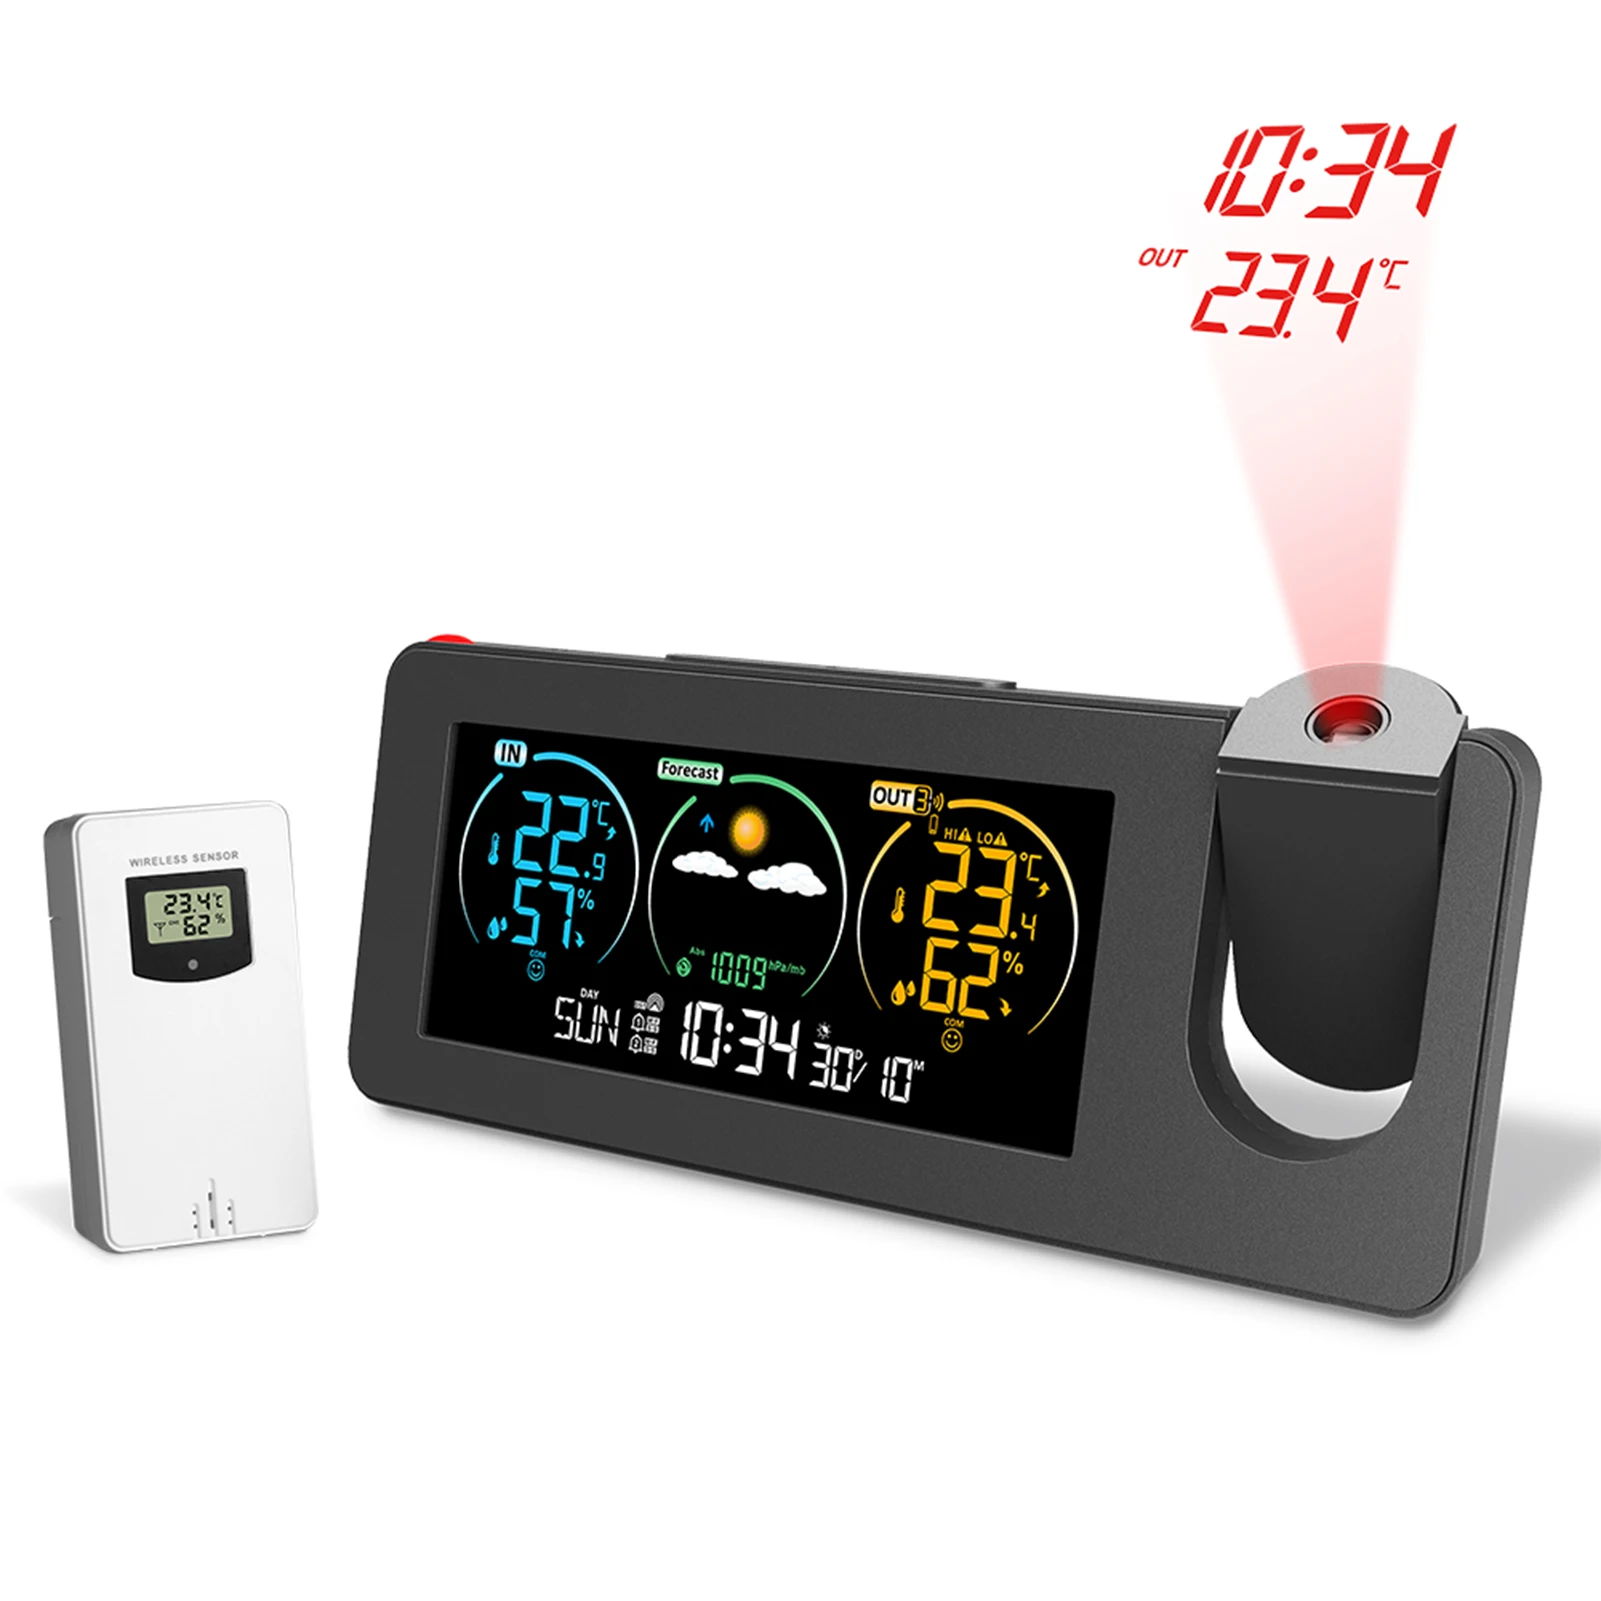 blanco)estación meteorológica LCD grande termómetro digital higrómetro  sensor interior exterior que incluye temperatura, humedad, pronóstico del  tiempo, ventana R